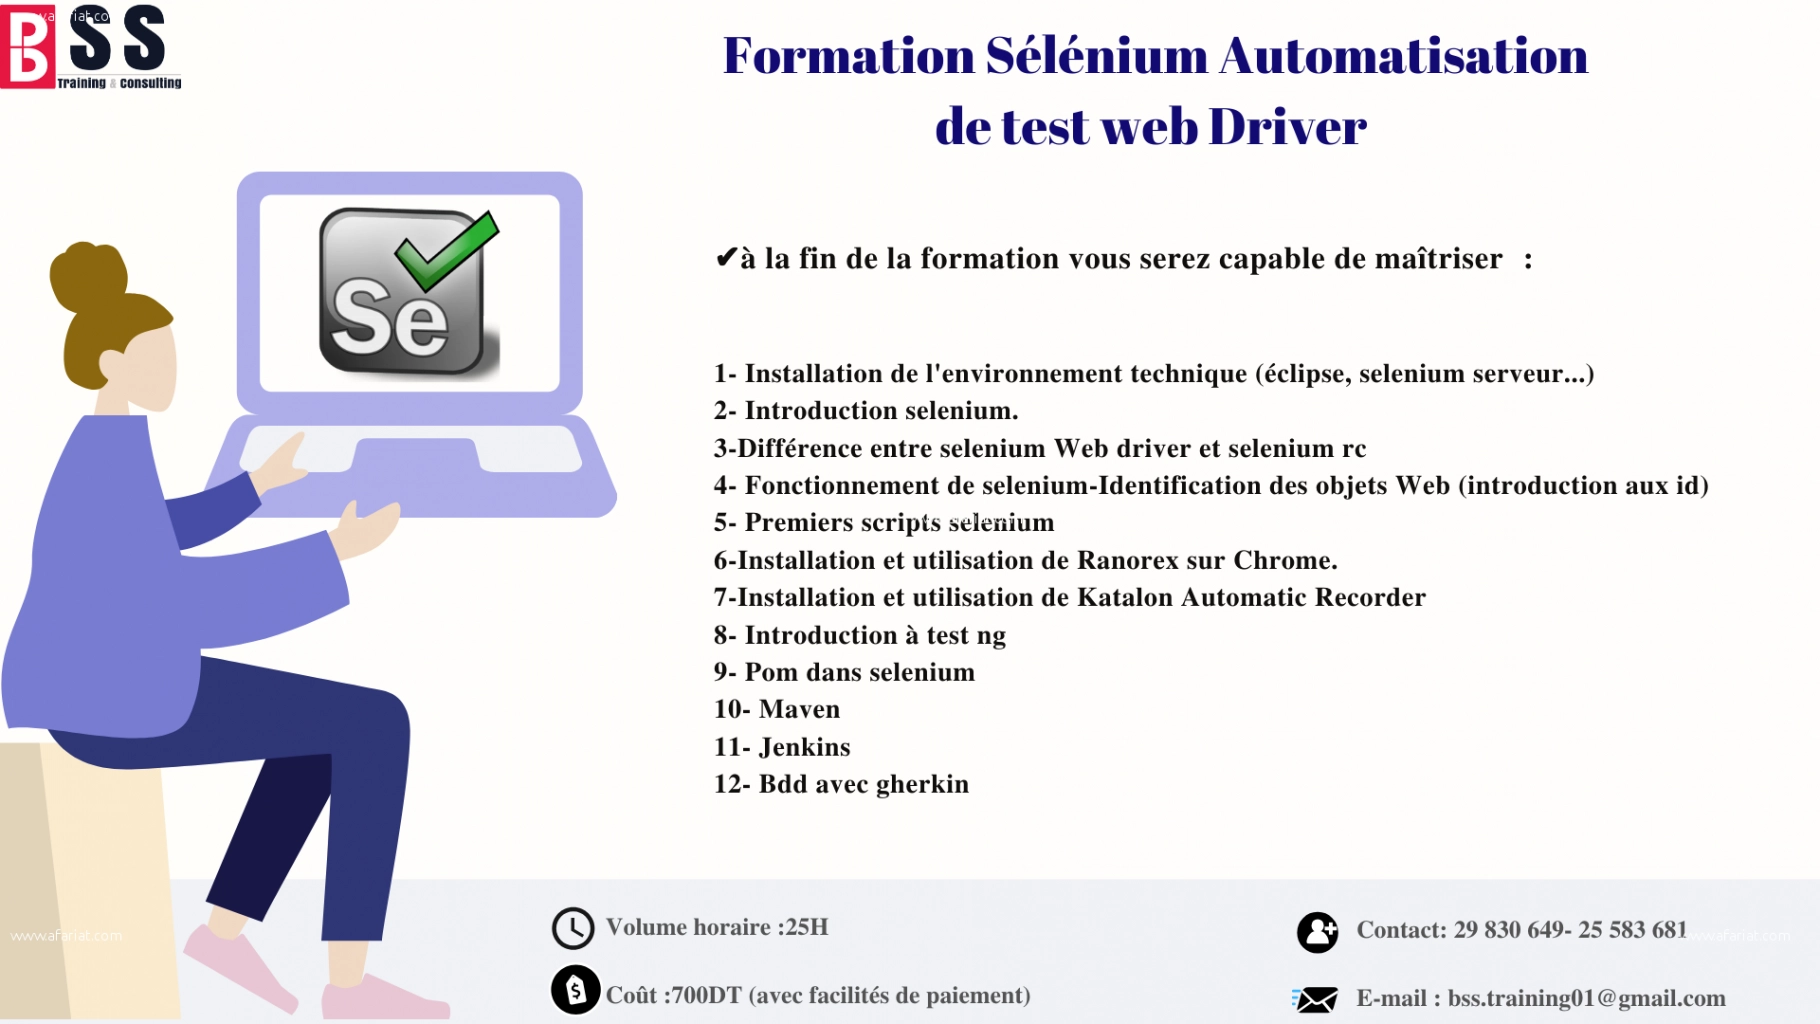 Formation Sélénium / web driver (A4Q)